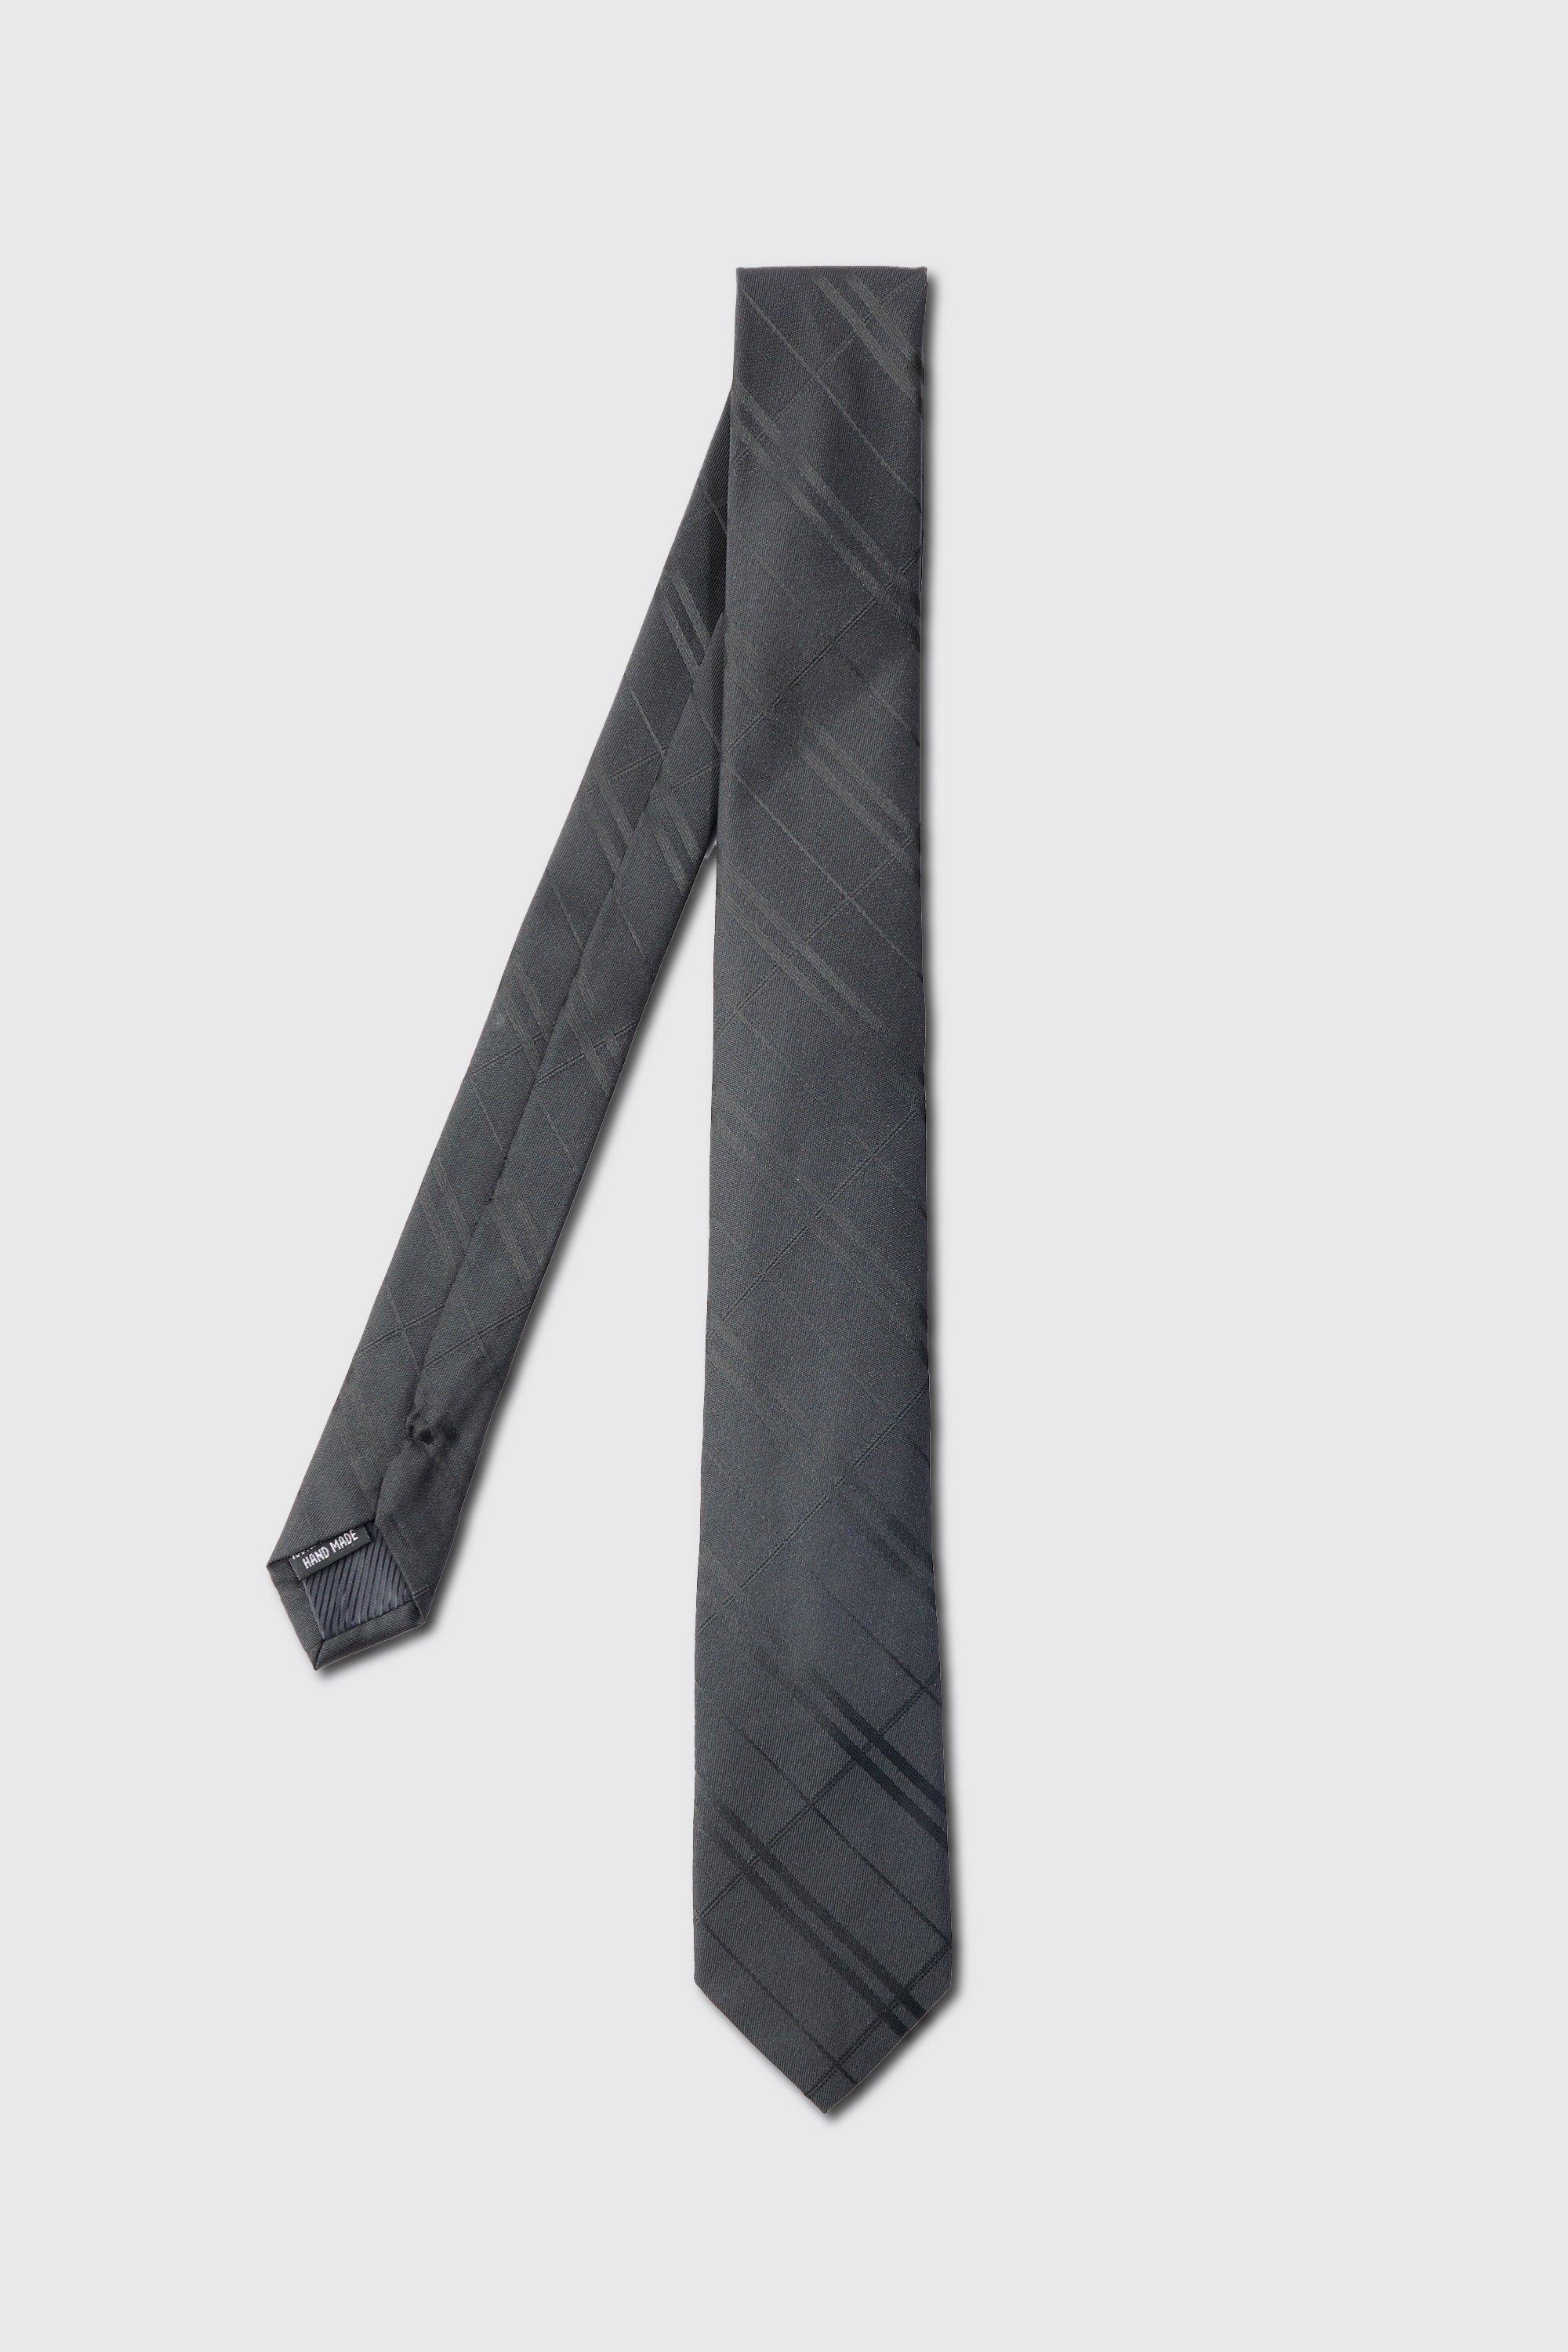 cravate fine à carreaux homme - noir - one size, noir